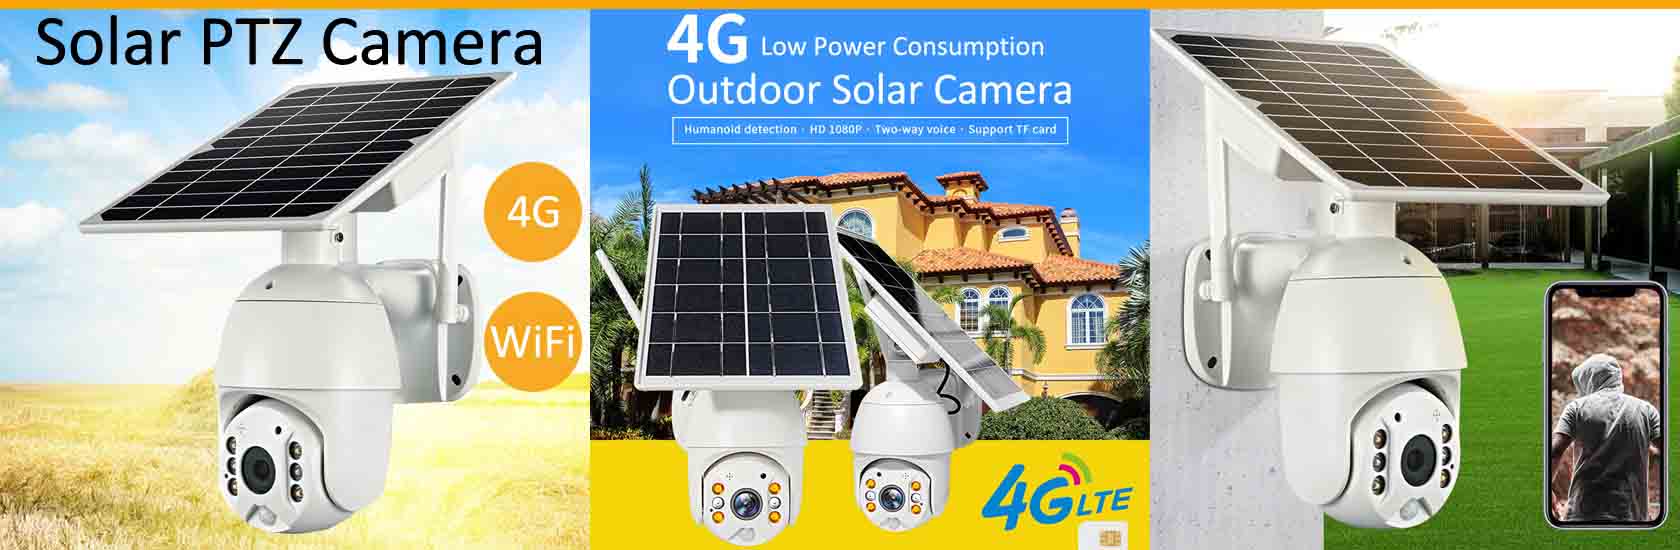 4G太阳能摄像头 VF-S10